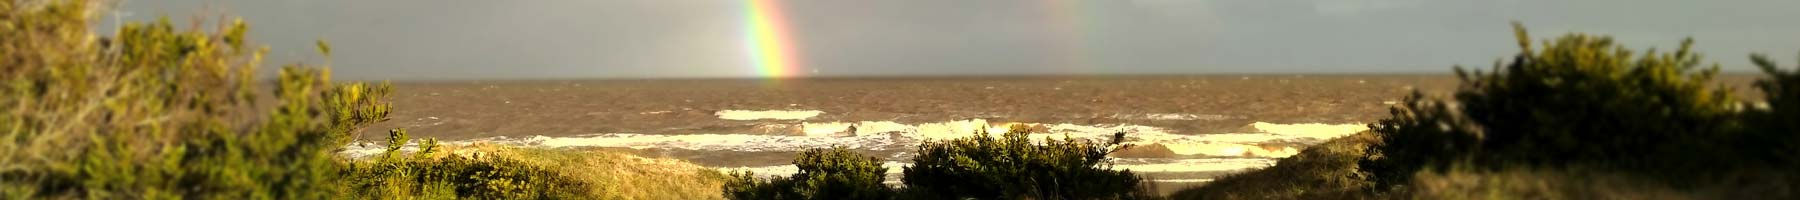 Rainbow over the Ocean